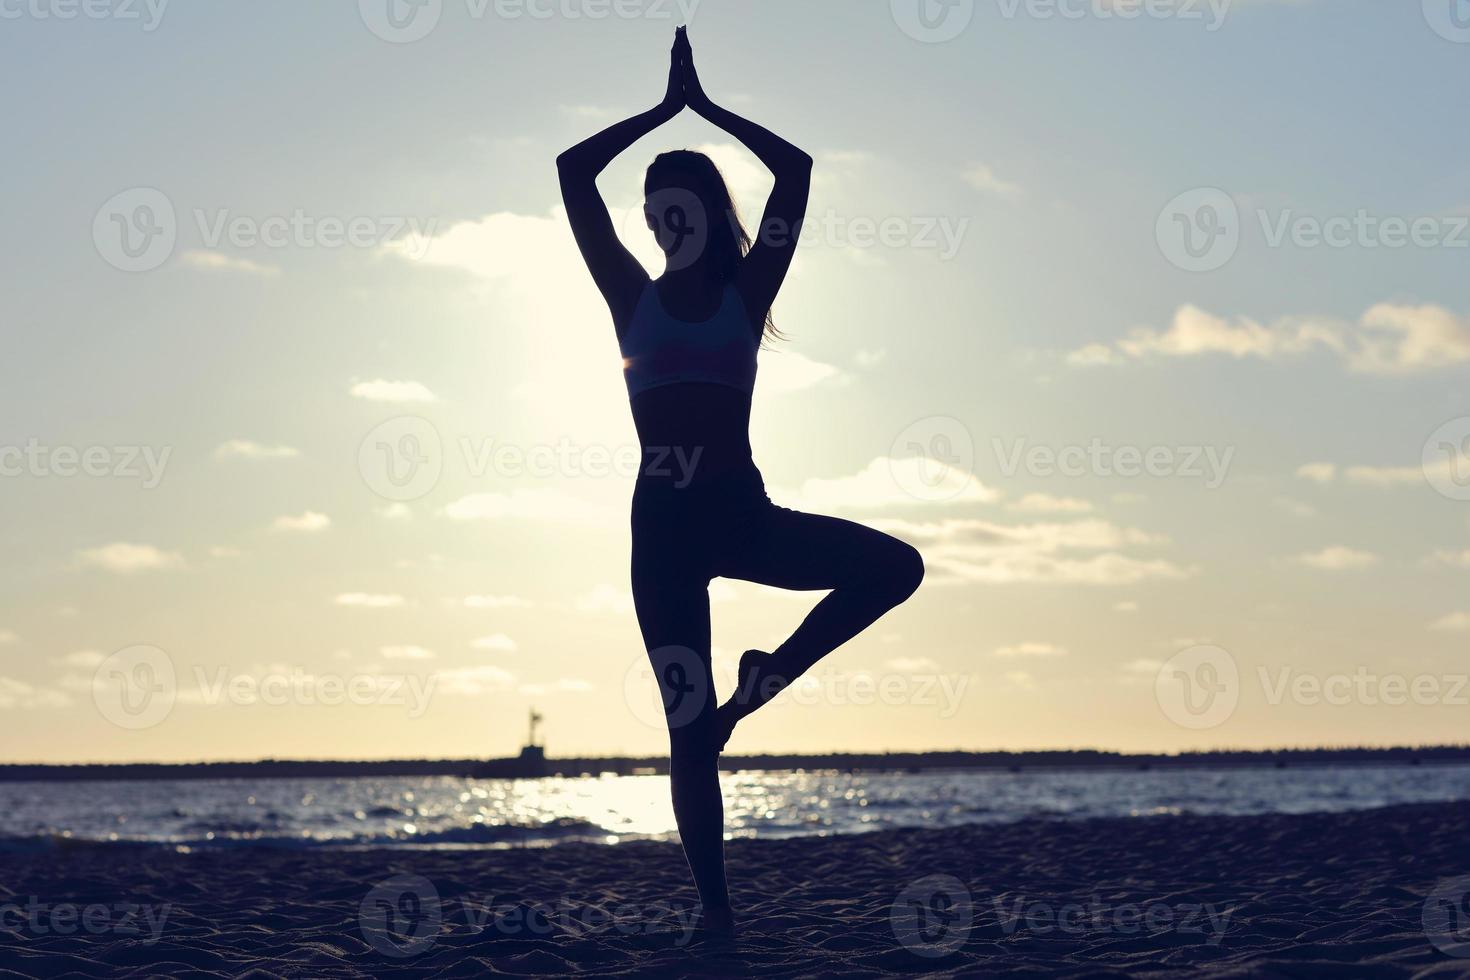 silhouet jonge vrouw beoefenen van yoga op het strand bij zonsondergang foto